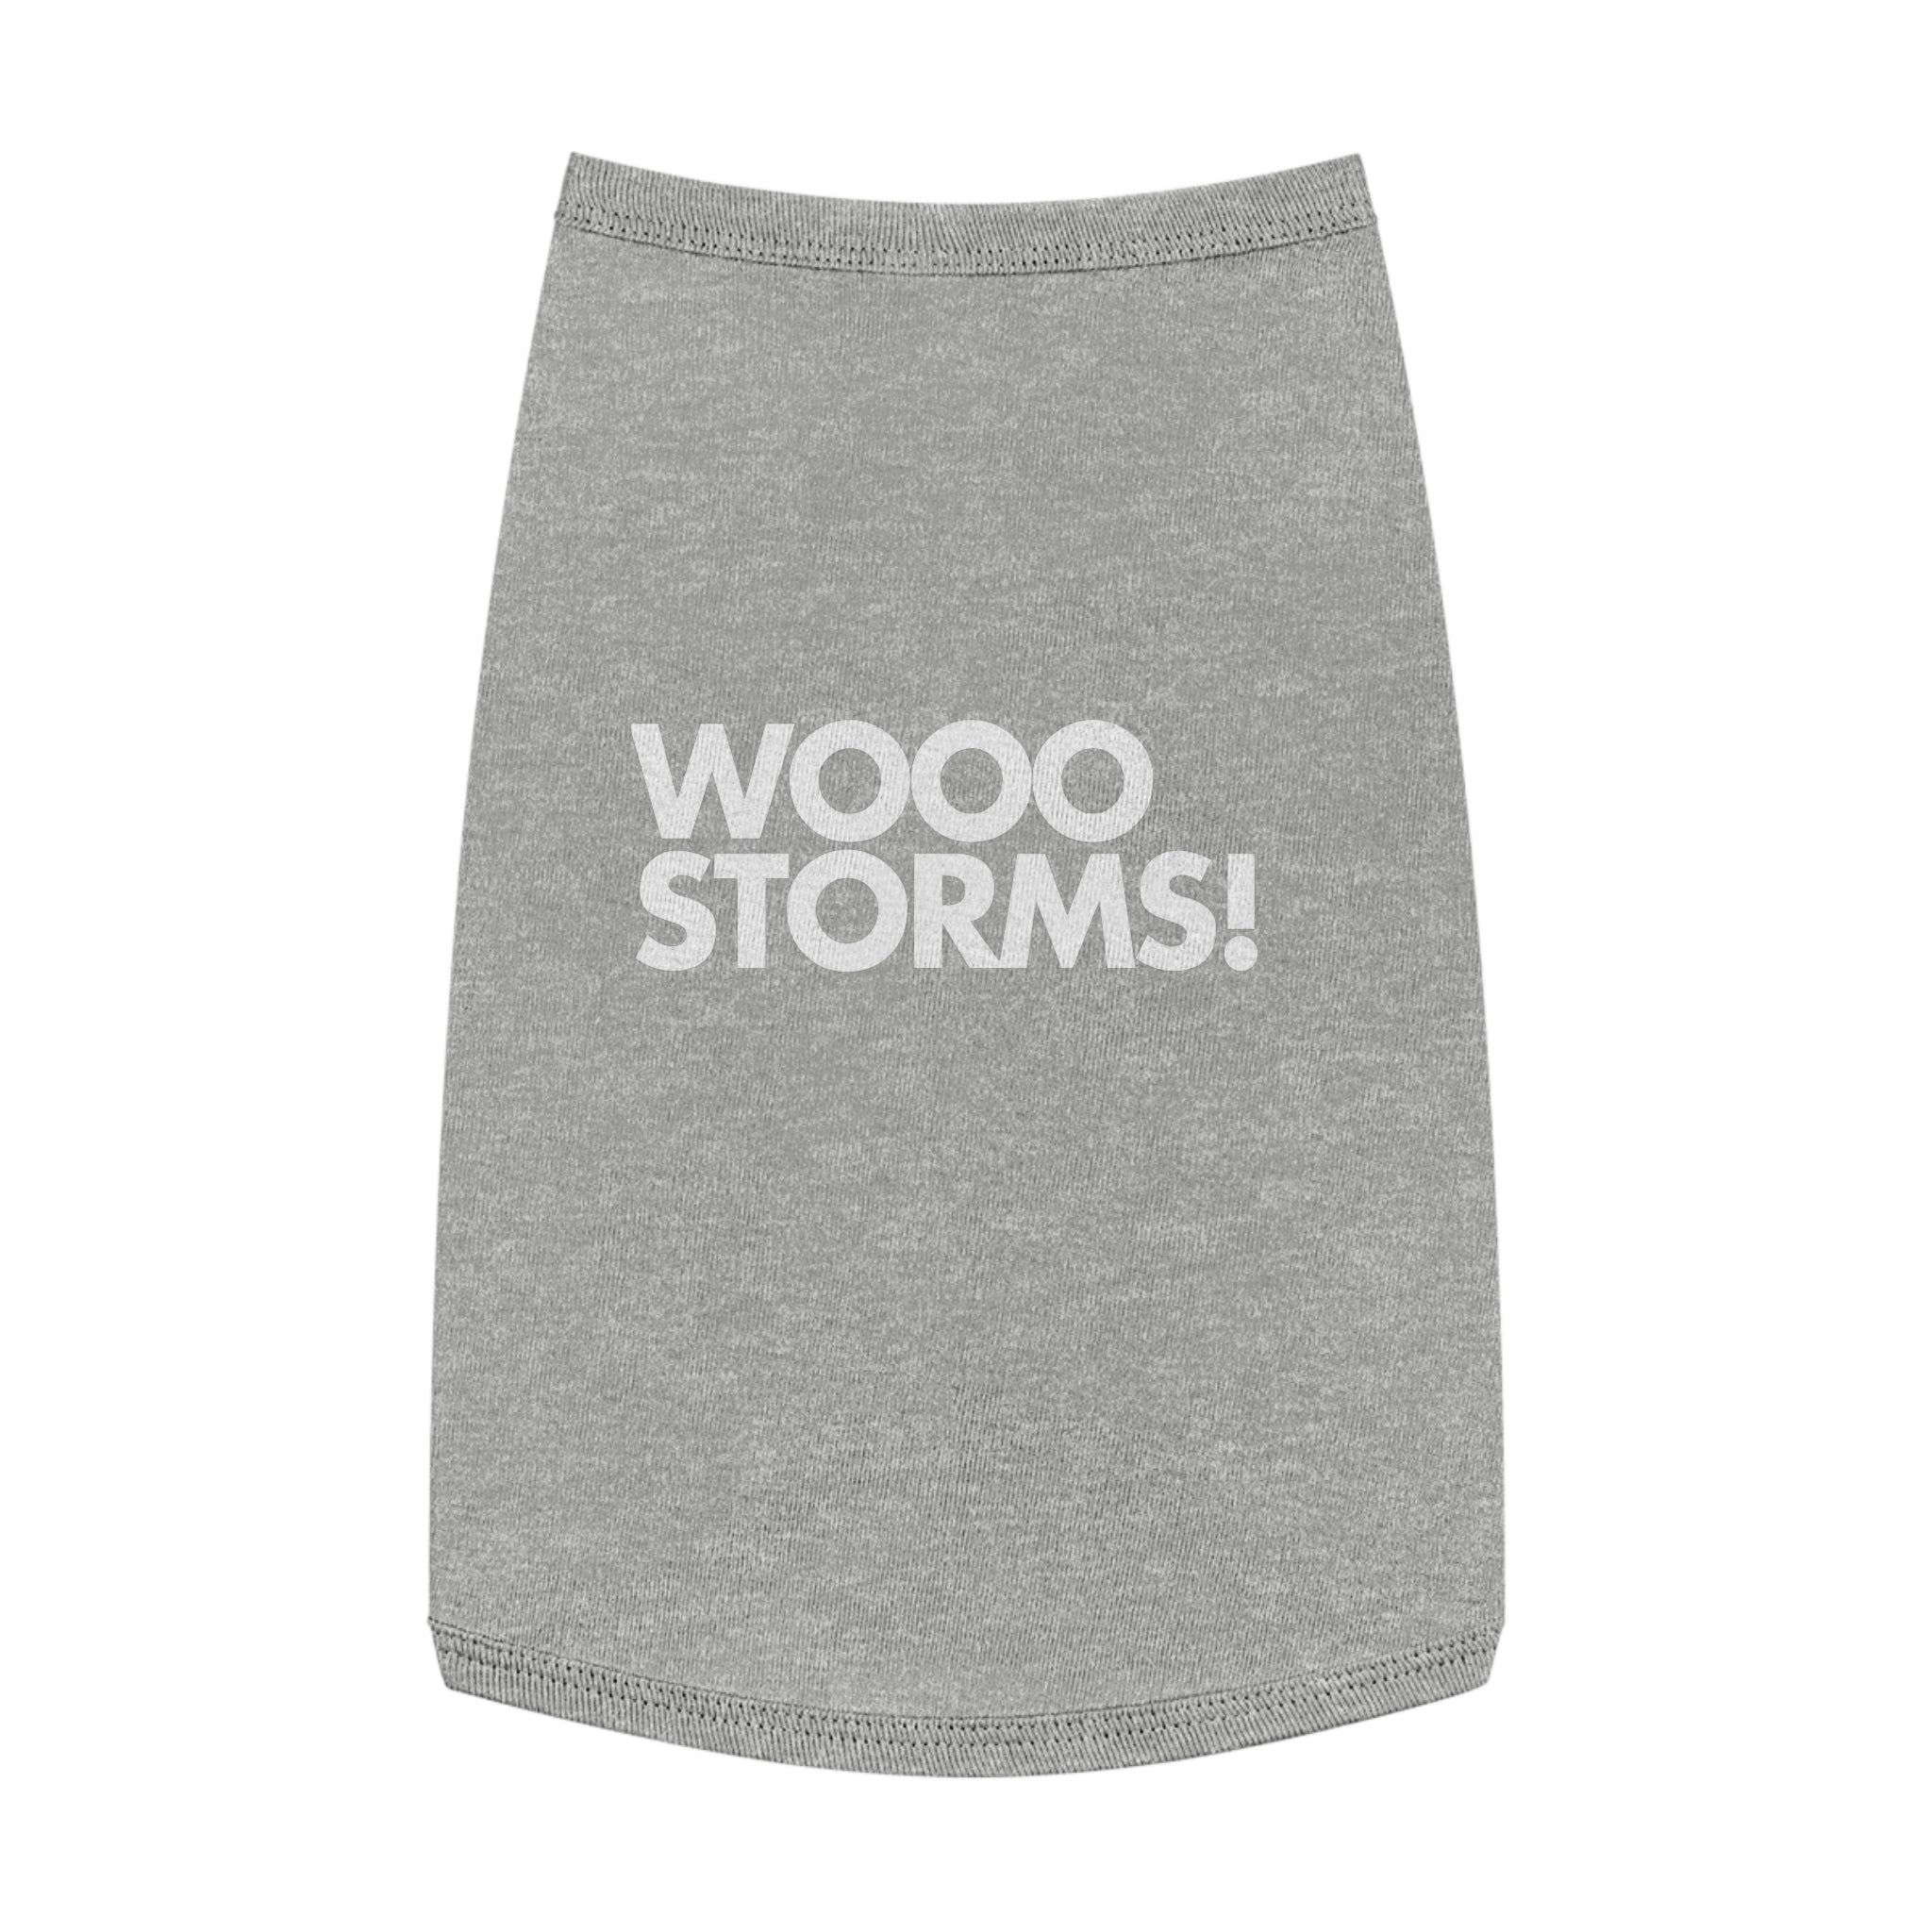 Wooo Storms! Pet Shirt 